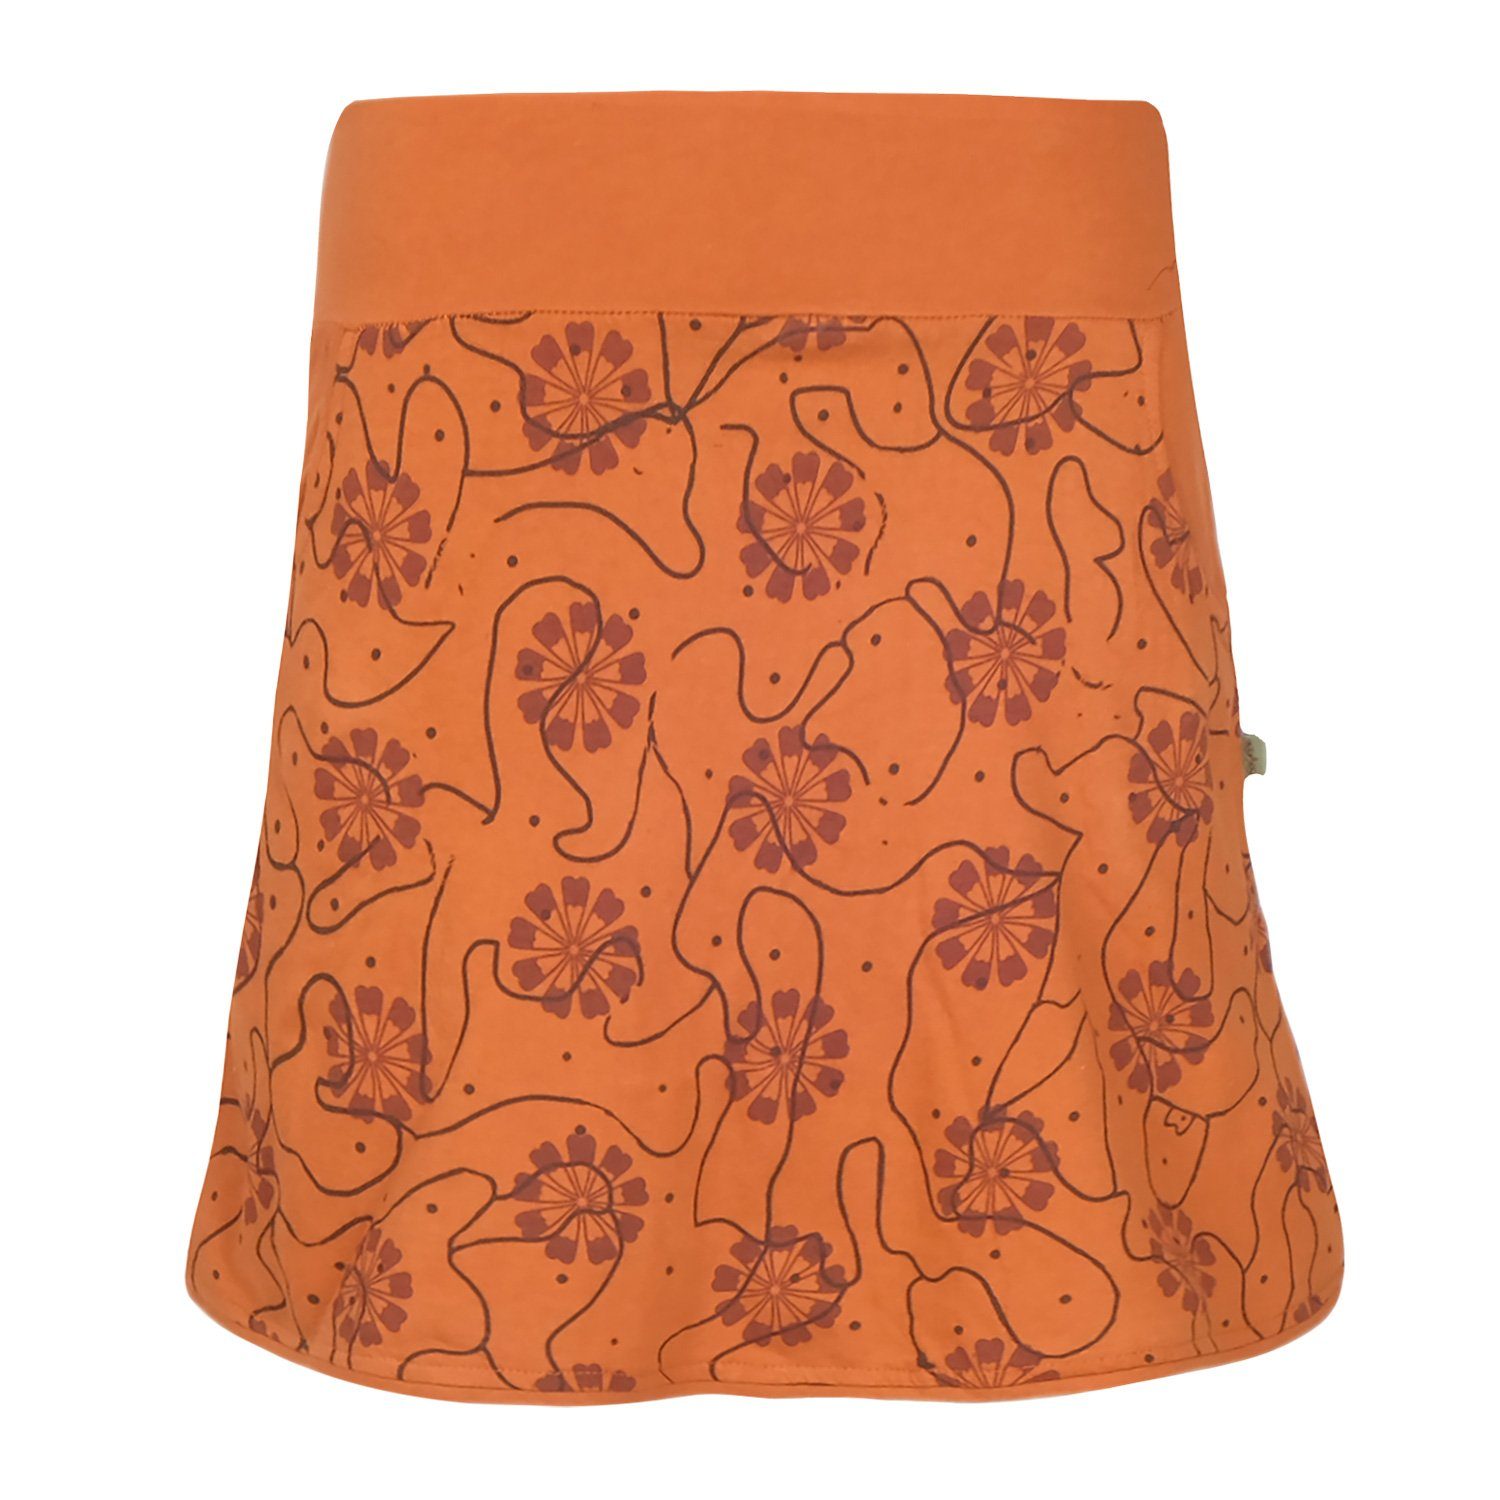 Baumwoll-Rock Jahre bedruckt Taschen Goa, Retro 70er 80er Style Jerseyrock Vishes Muster Hippie Ornamente, Blumen orange